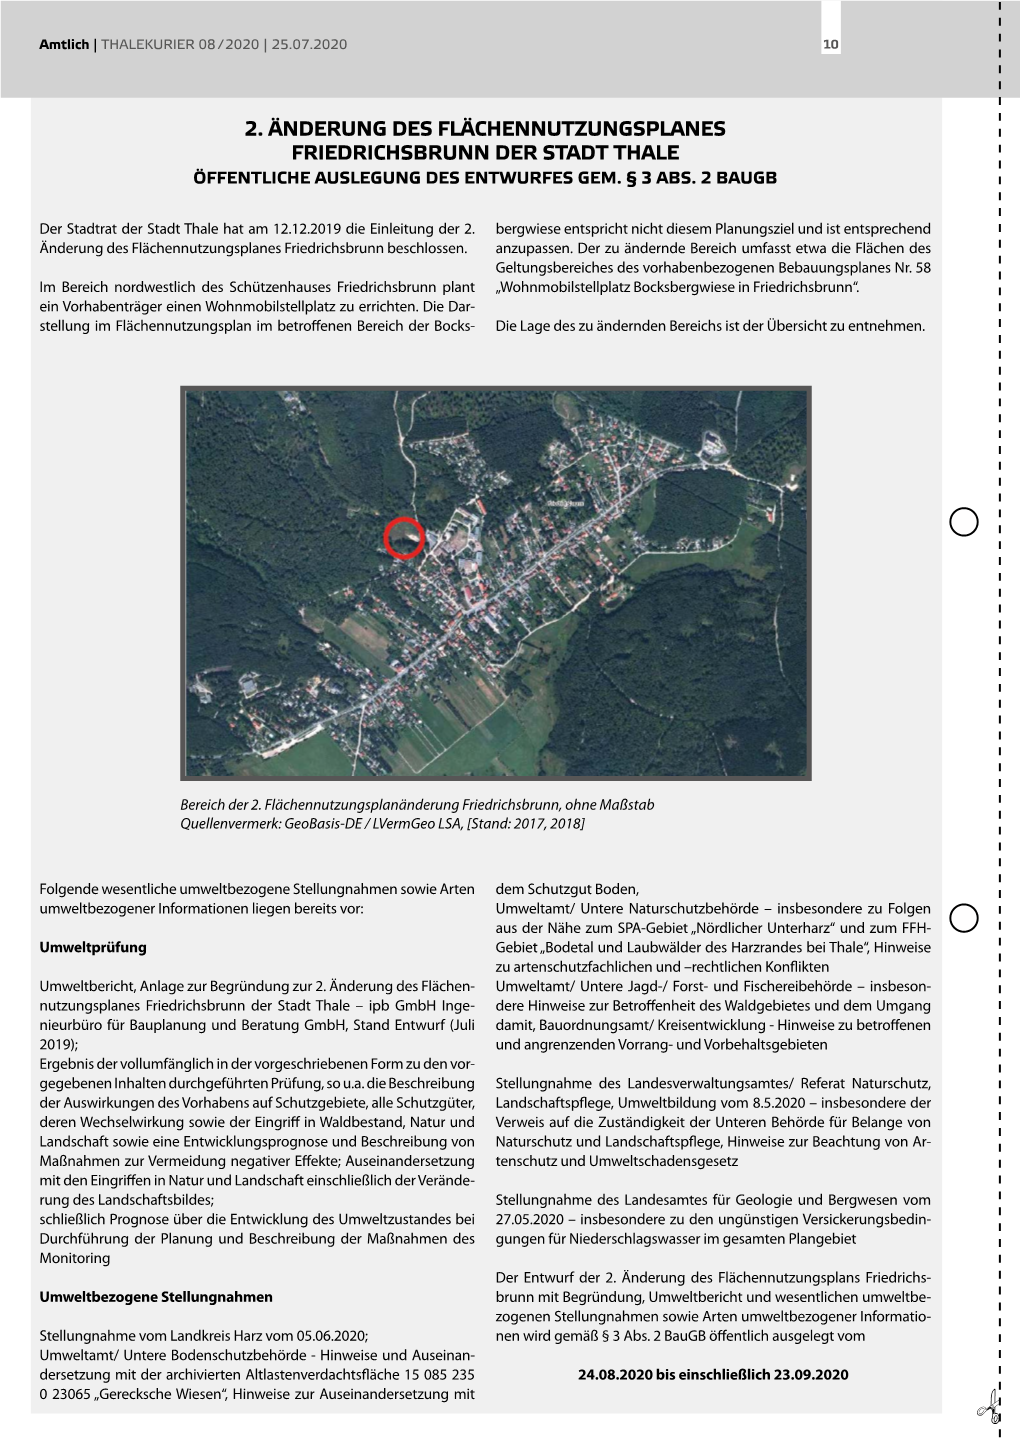 2. Änderung Des Flächennutzungsplanes Friedrichsbrunn Der Stadt Thale Öffentliche Auslegung Des Entwurfes Gem